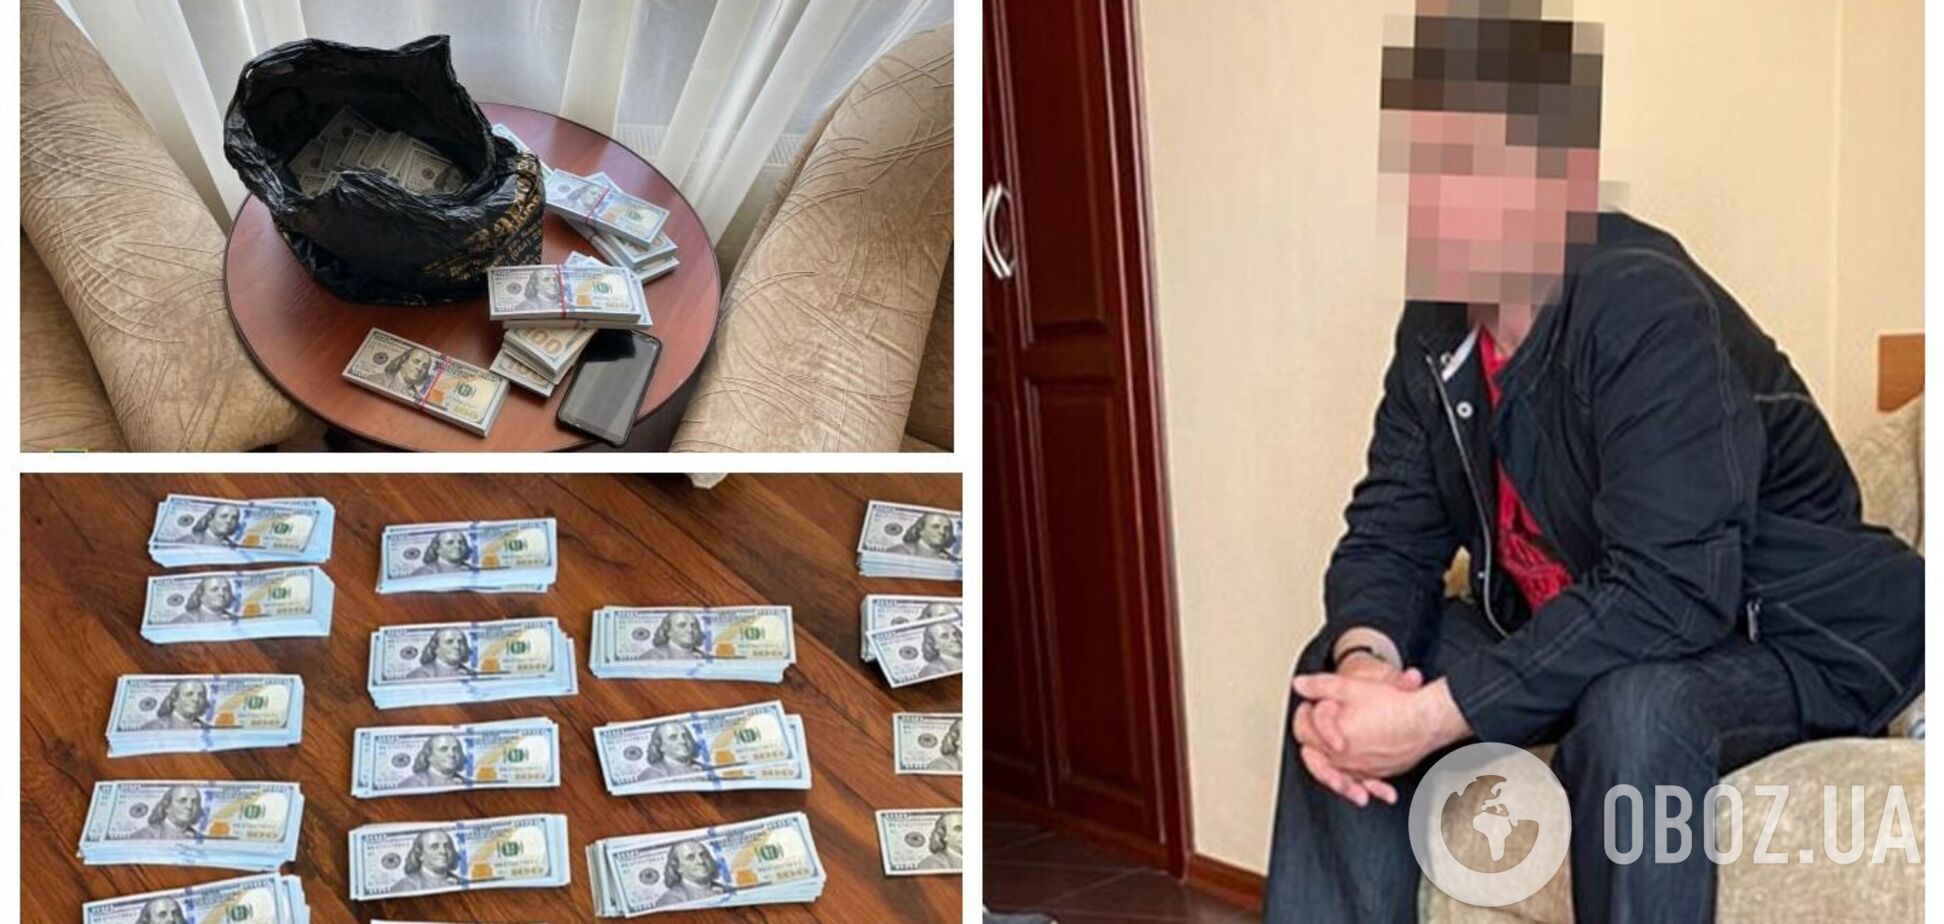 Українець намагався продати іноземцям секретні дані про військові розробки: йому повідомили про підозру. Фото